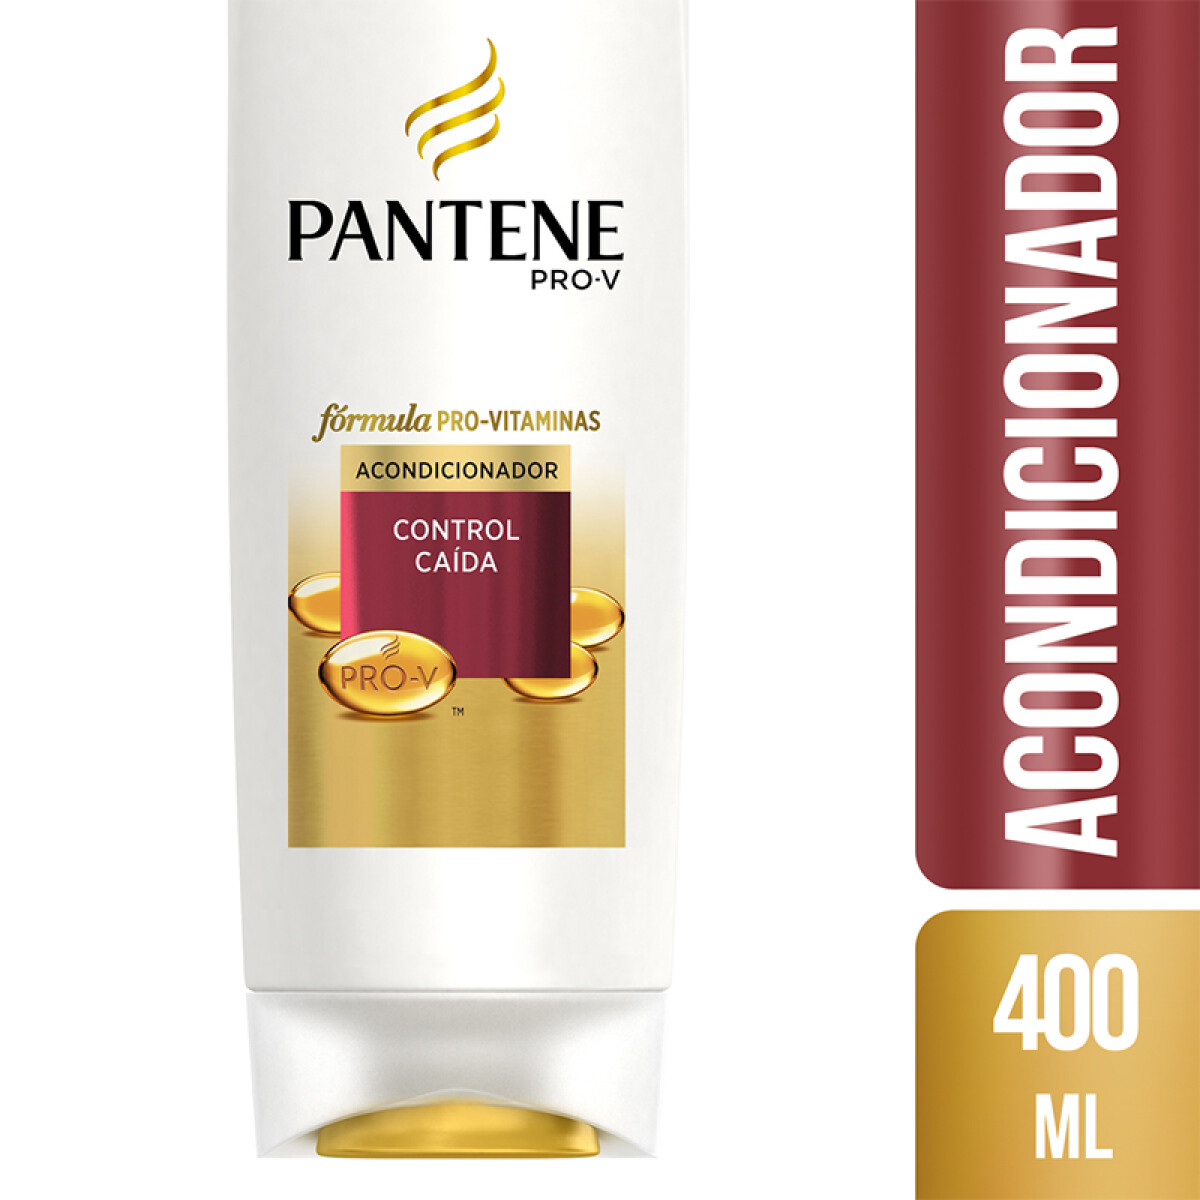 Pantene Acondicionador Control caída - 400 ml 